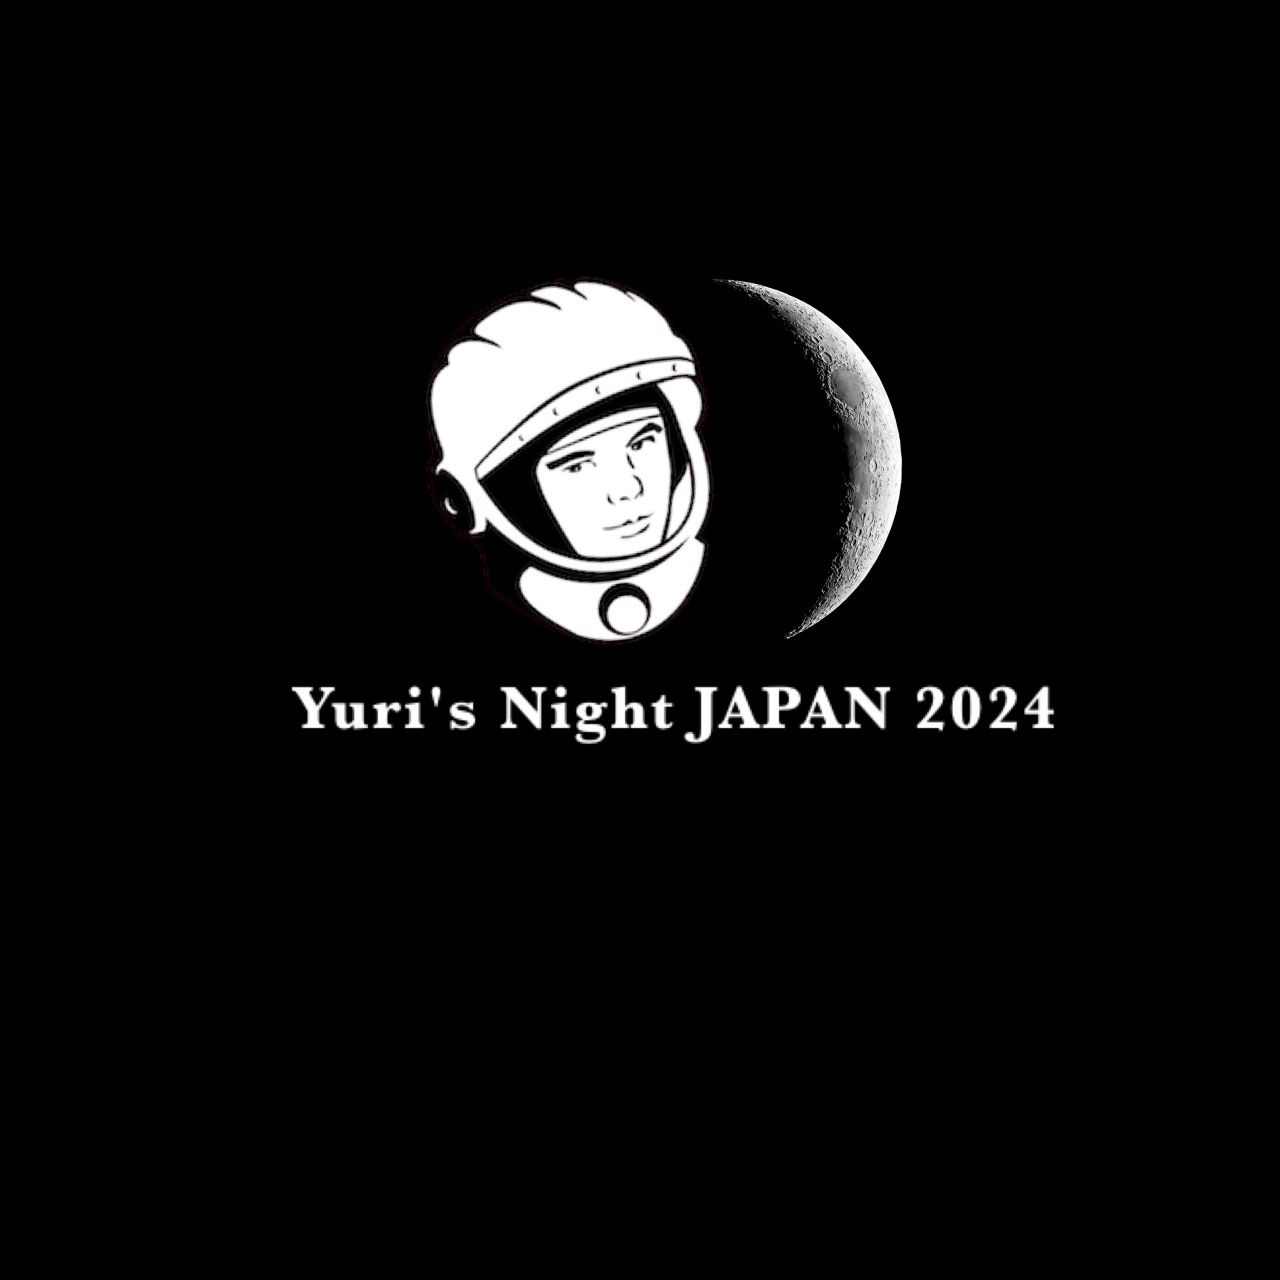 Yuri's Night JAPAN